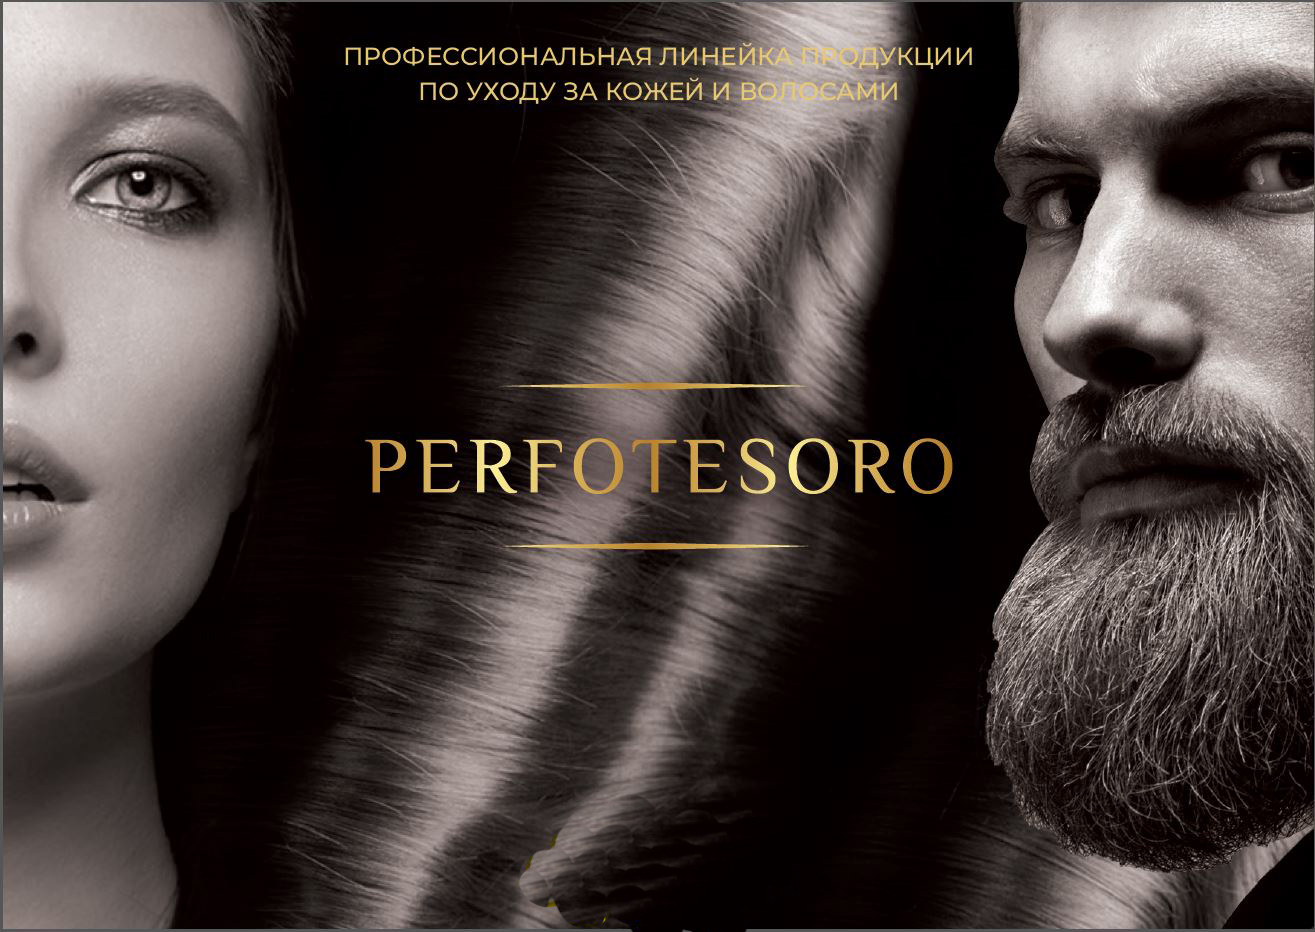 Косметика Perfotesoro для роста волос, ресниц, бровей и бороды